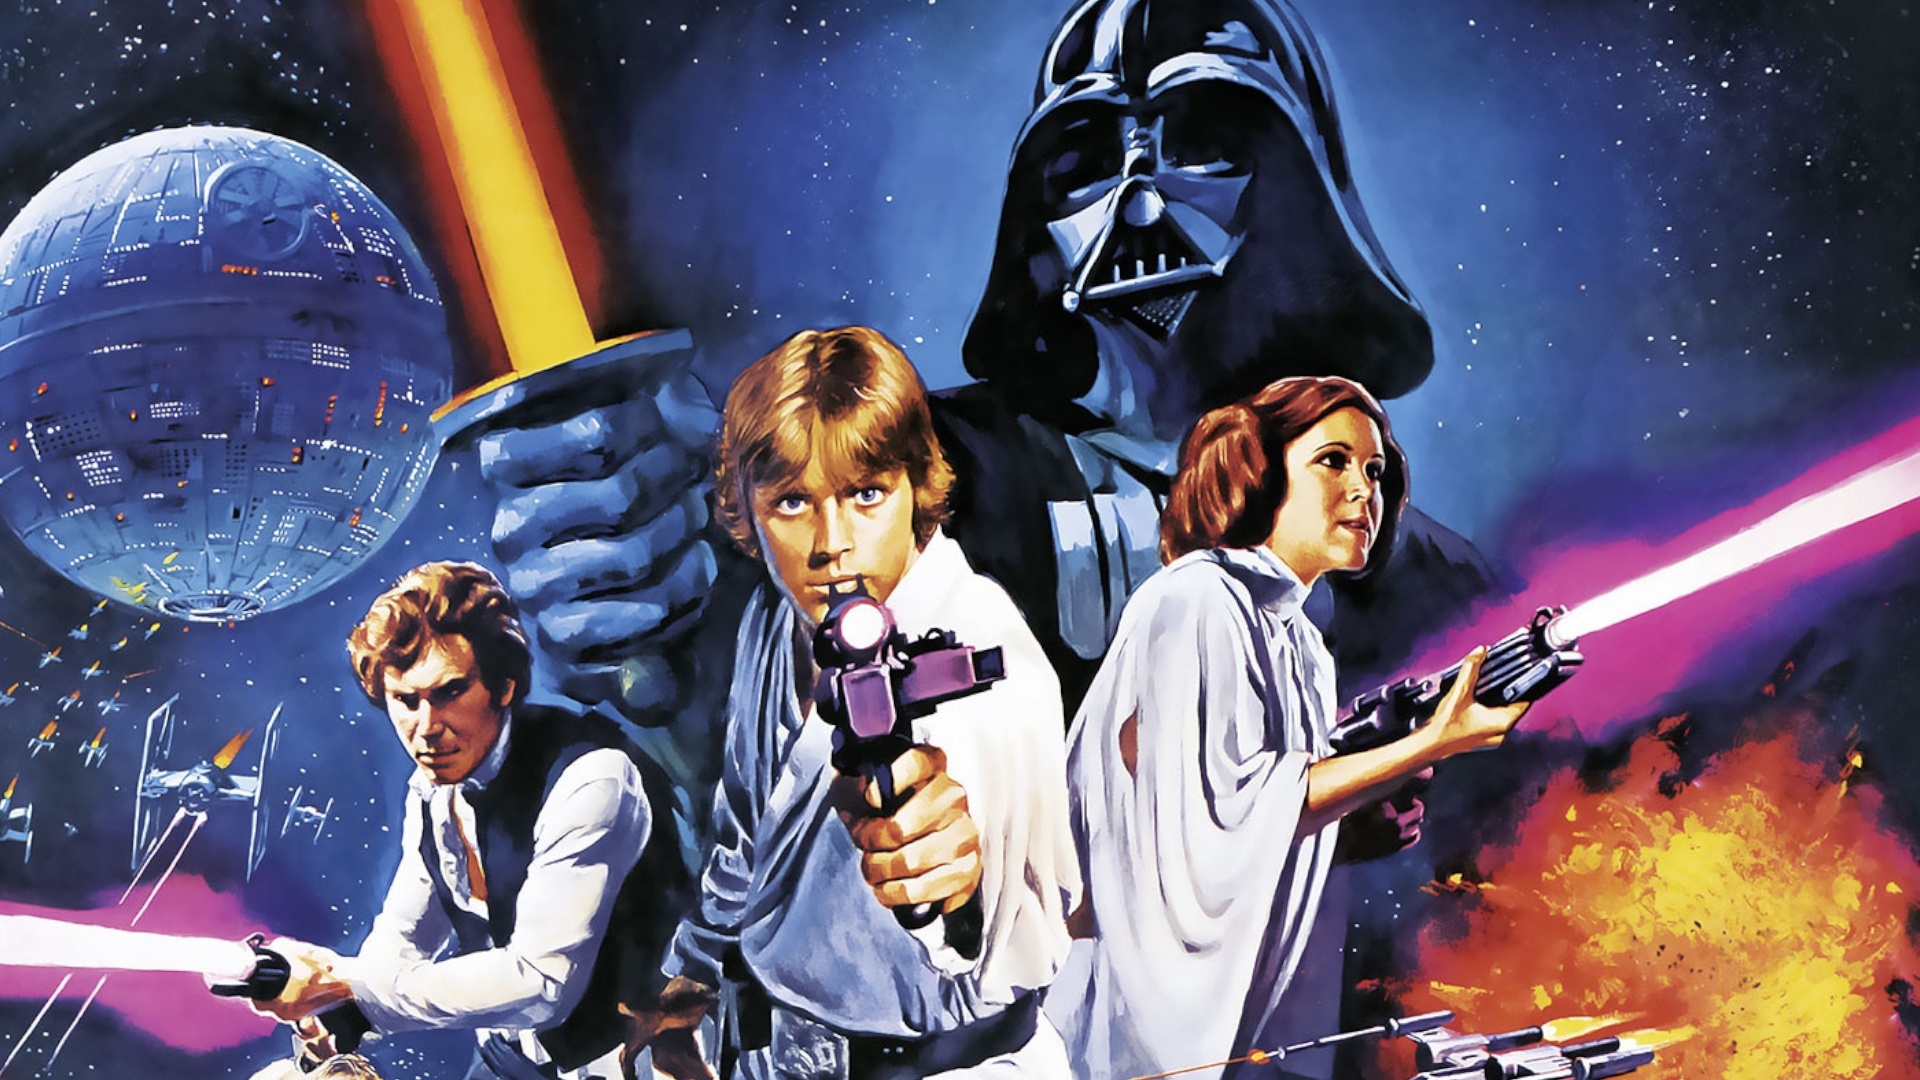 #Star Wars: Wie gut kennst du die Filme und Serien? Teste dein Wissen mit unserem Quiz